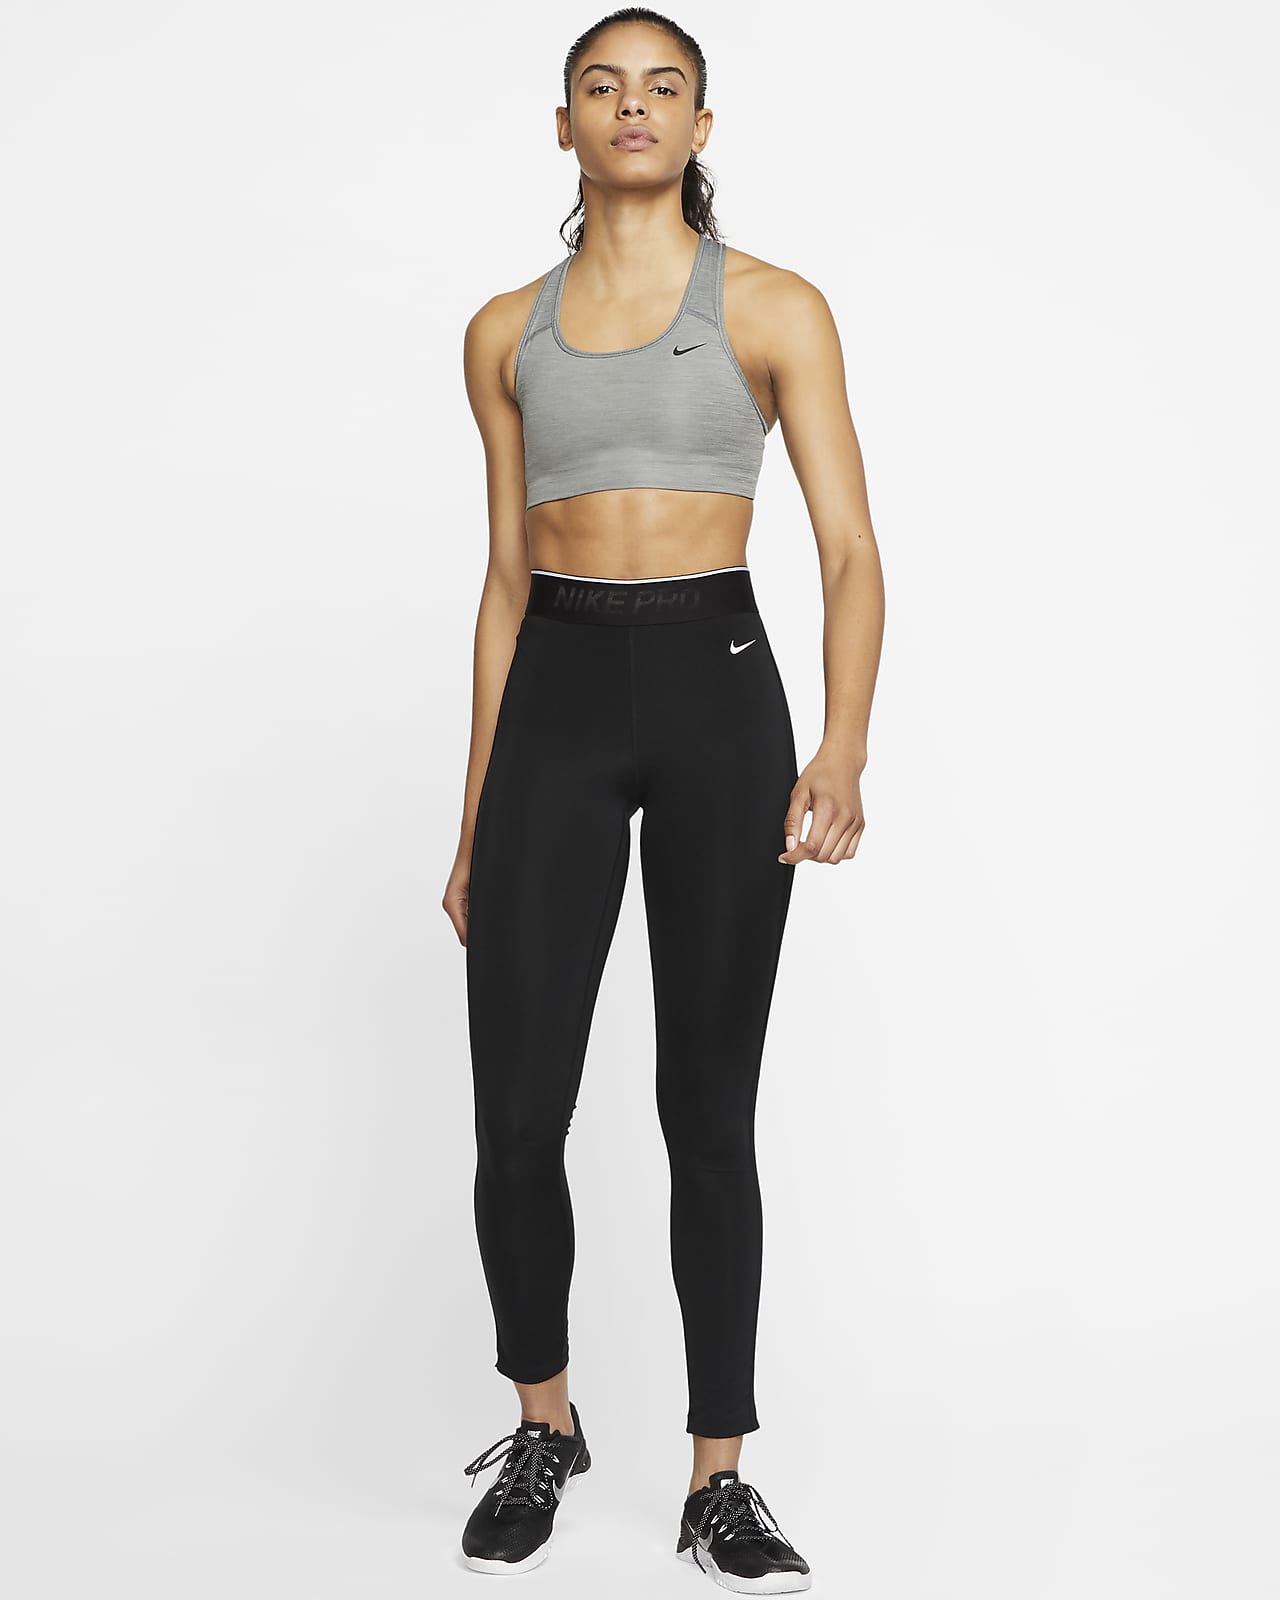 Nike Women's Air Dri-Fit Swoosh Sports Bra Size Medium DM0643-610 - Sangria